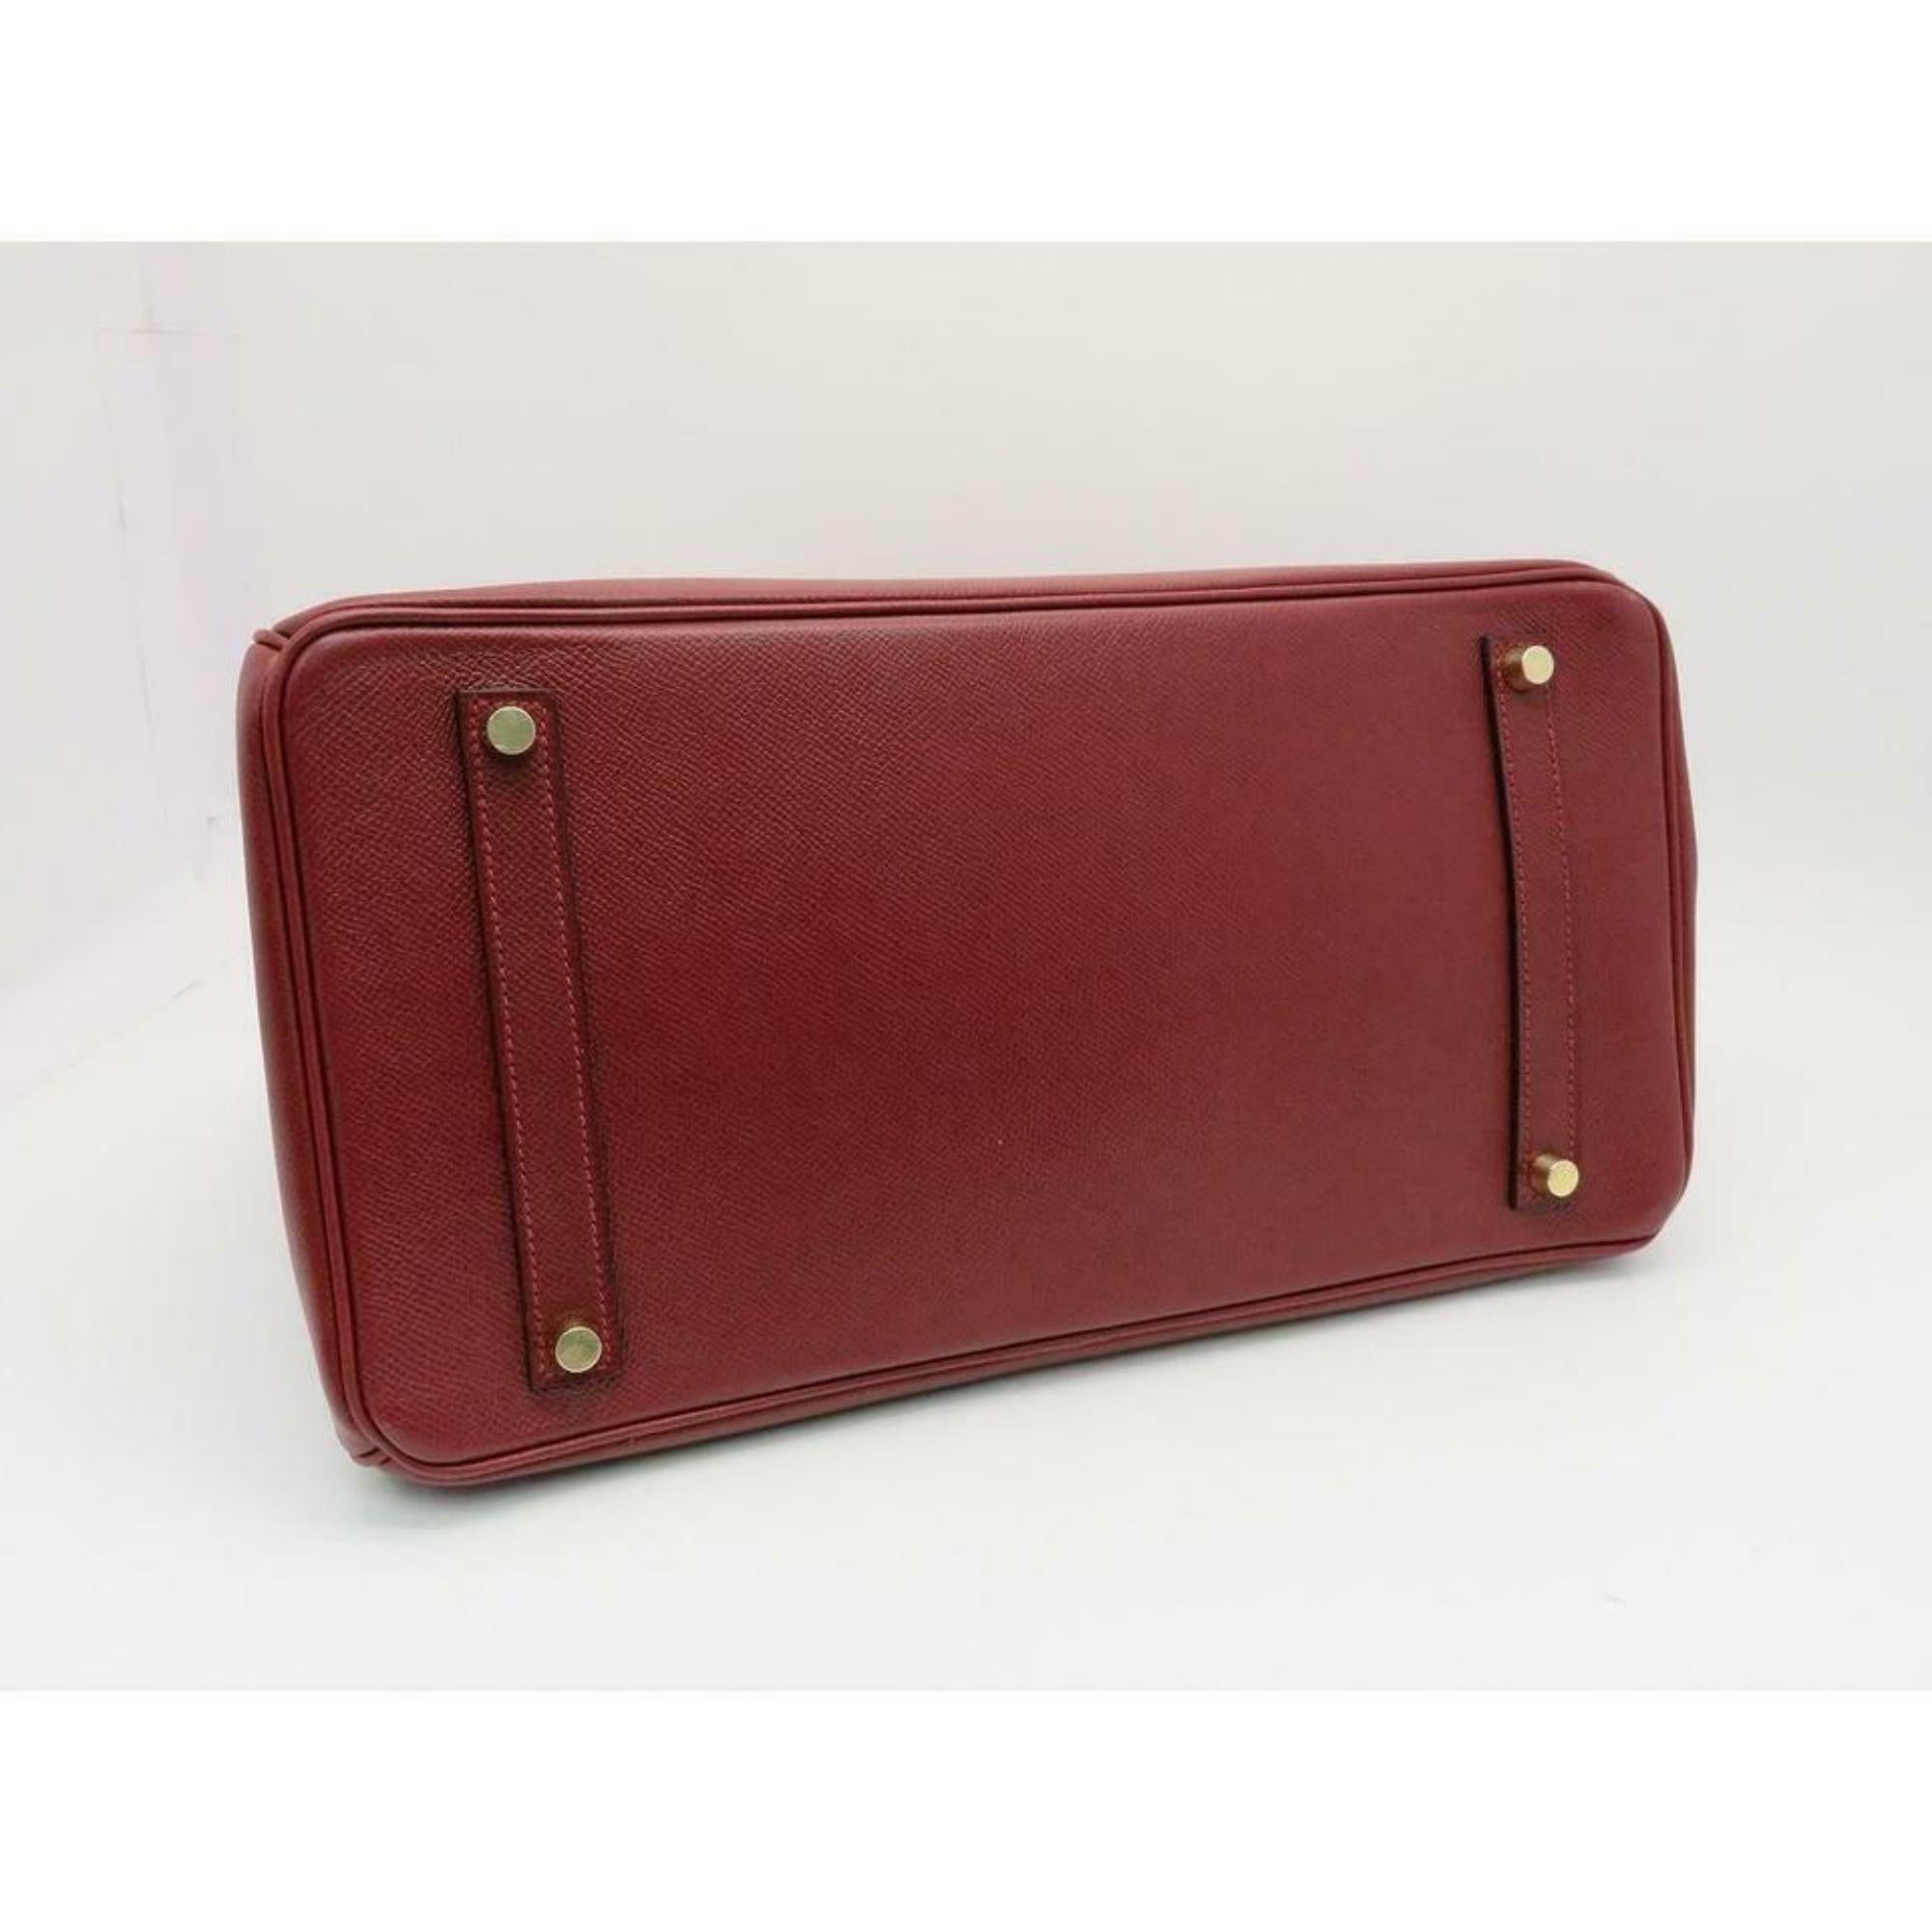 Hermès Birkin Dark Rouge Courchevel Rouge 35 870369 Red Leather Satchel For Sale 3